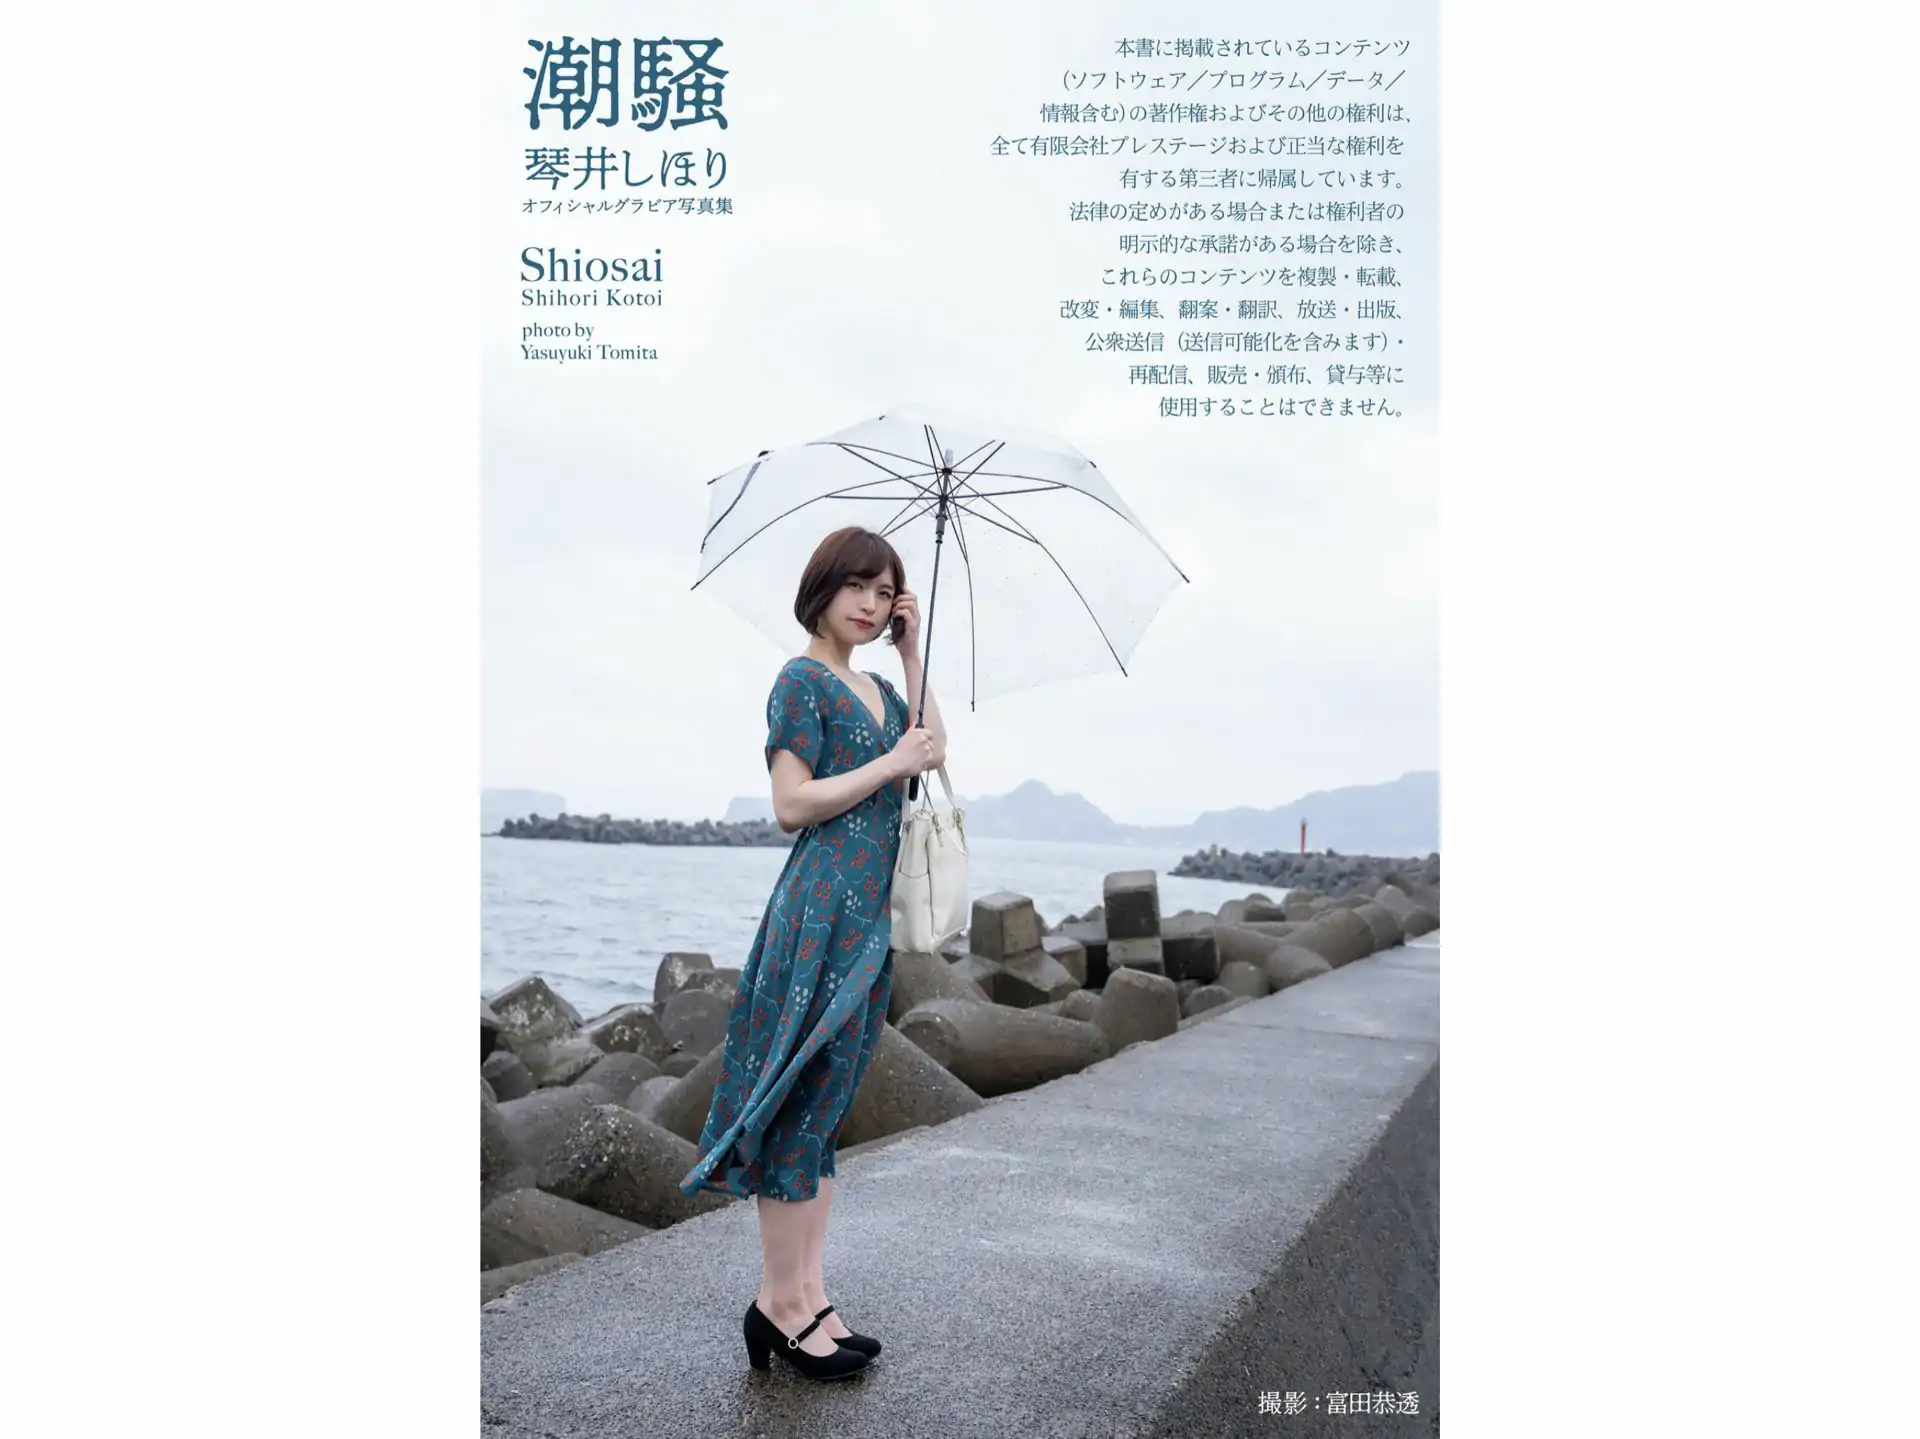 Shihori Kotoi 琴井しほり - Shiosai 潮騒